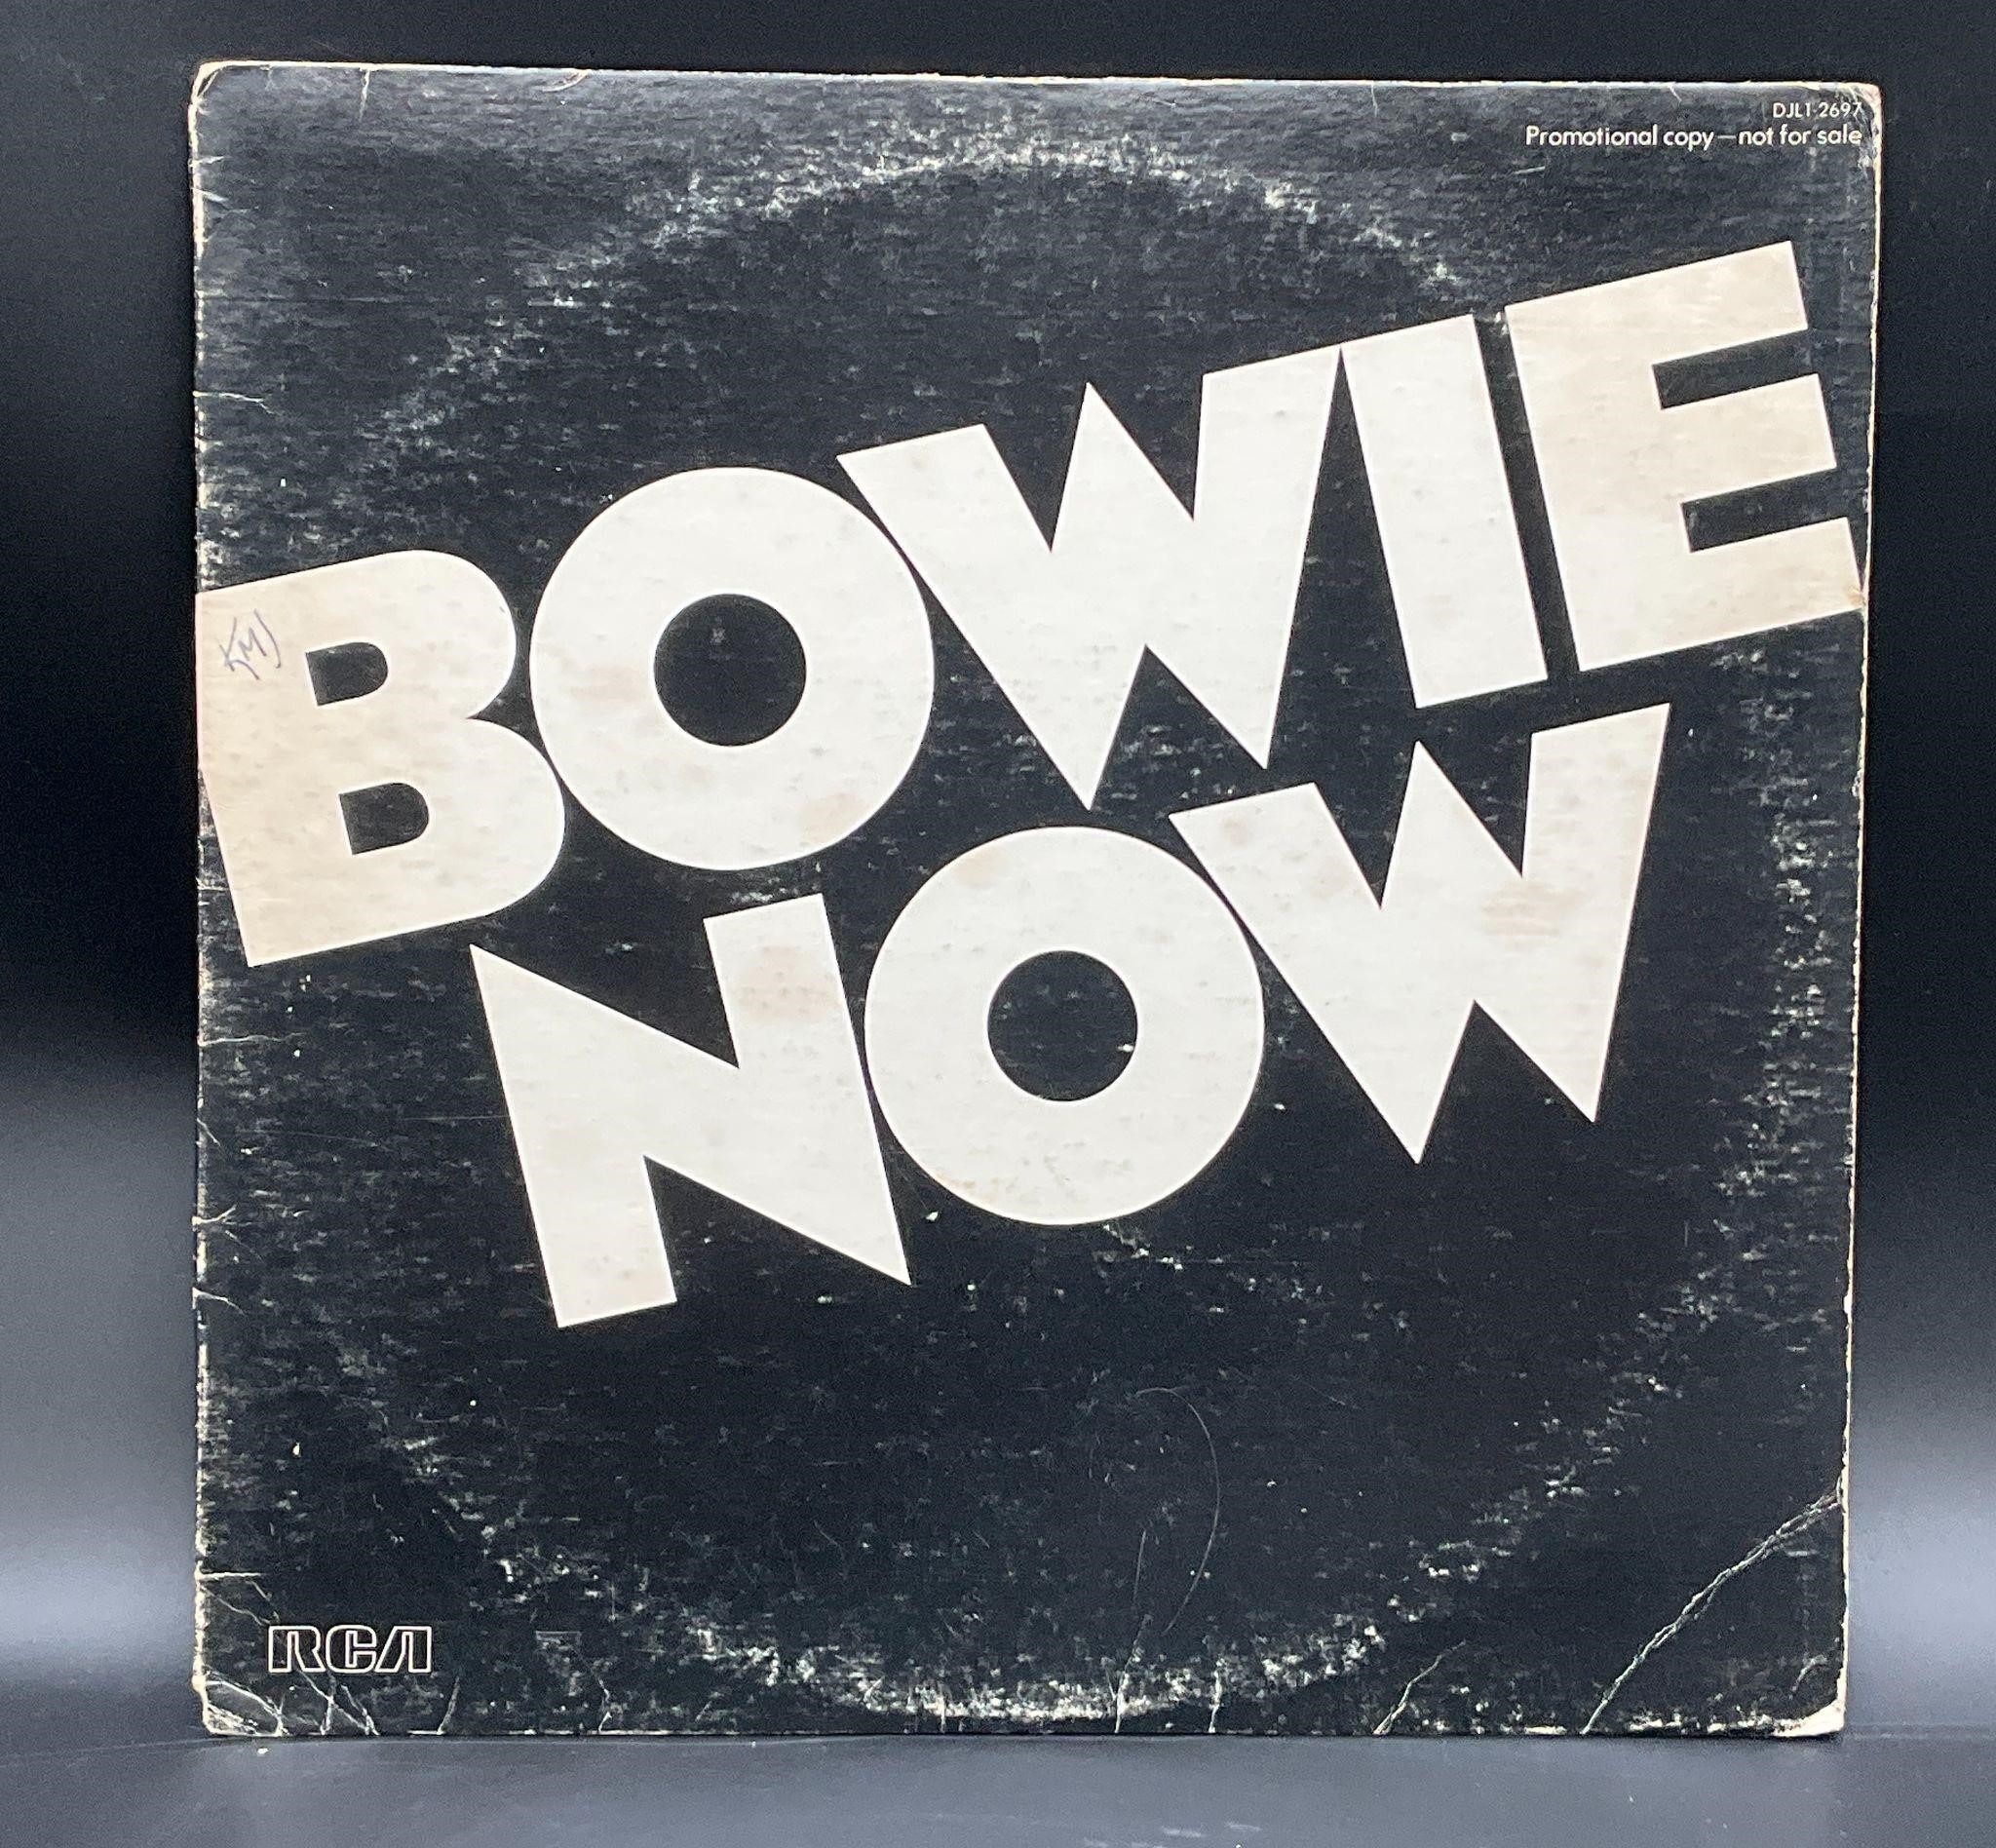 1978 David Bowie "Bowie Now" Promo LP Album